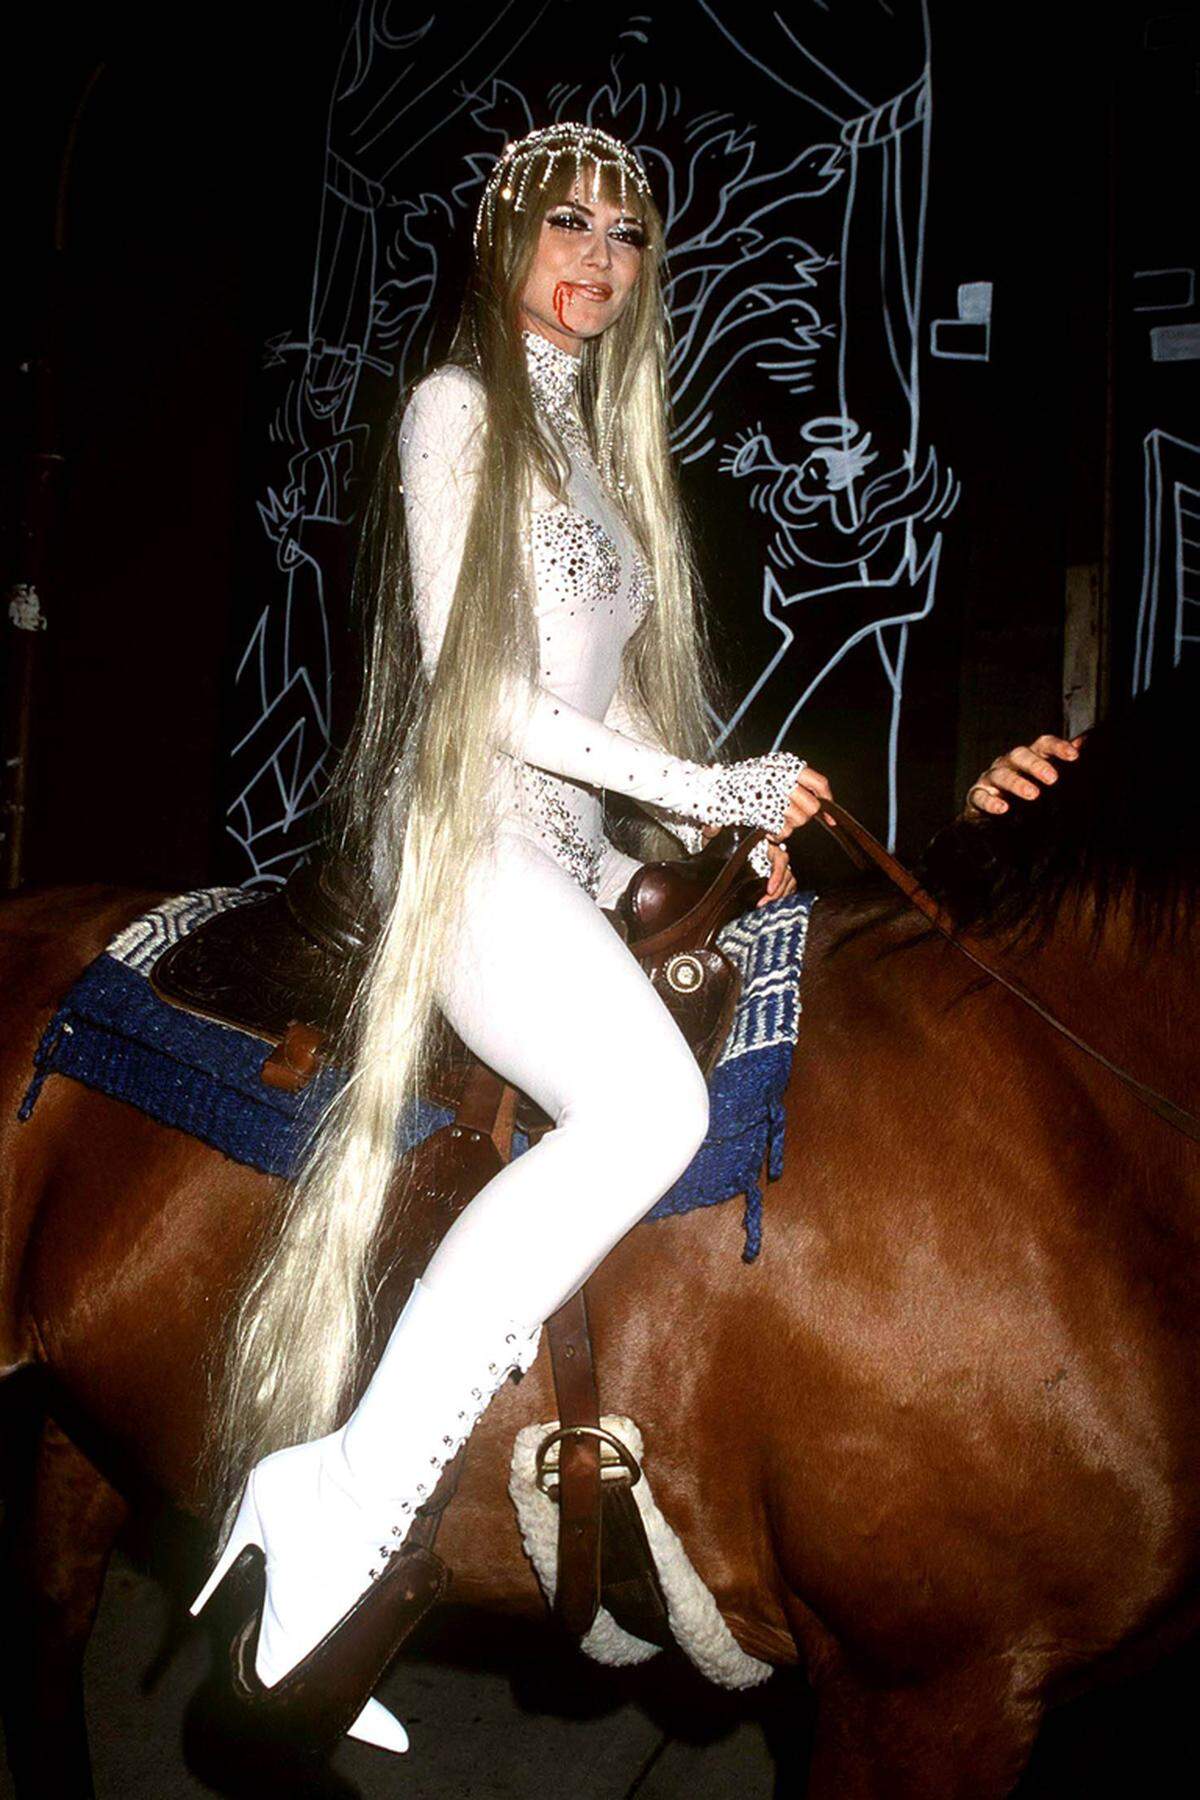 Standesgemäß für ein Burgfräulein ritt Heidi Klum 2001 auf einem Pferd in den New Yorker Club "Lot 61" zu ihrer Party ein.